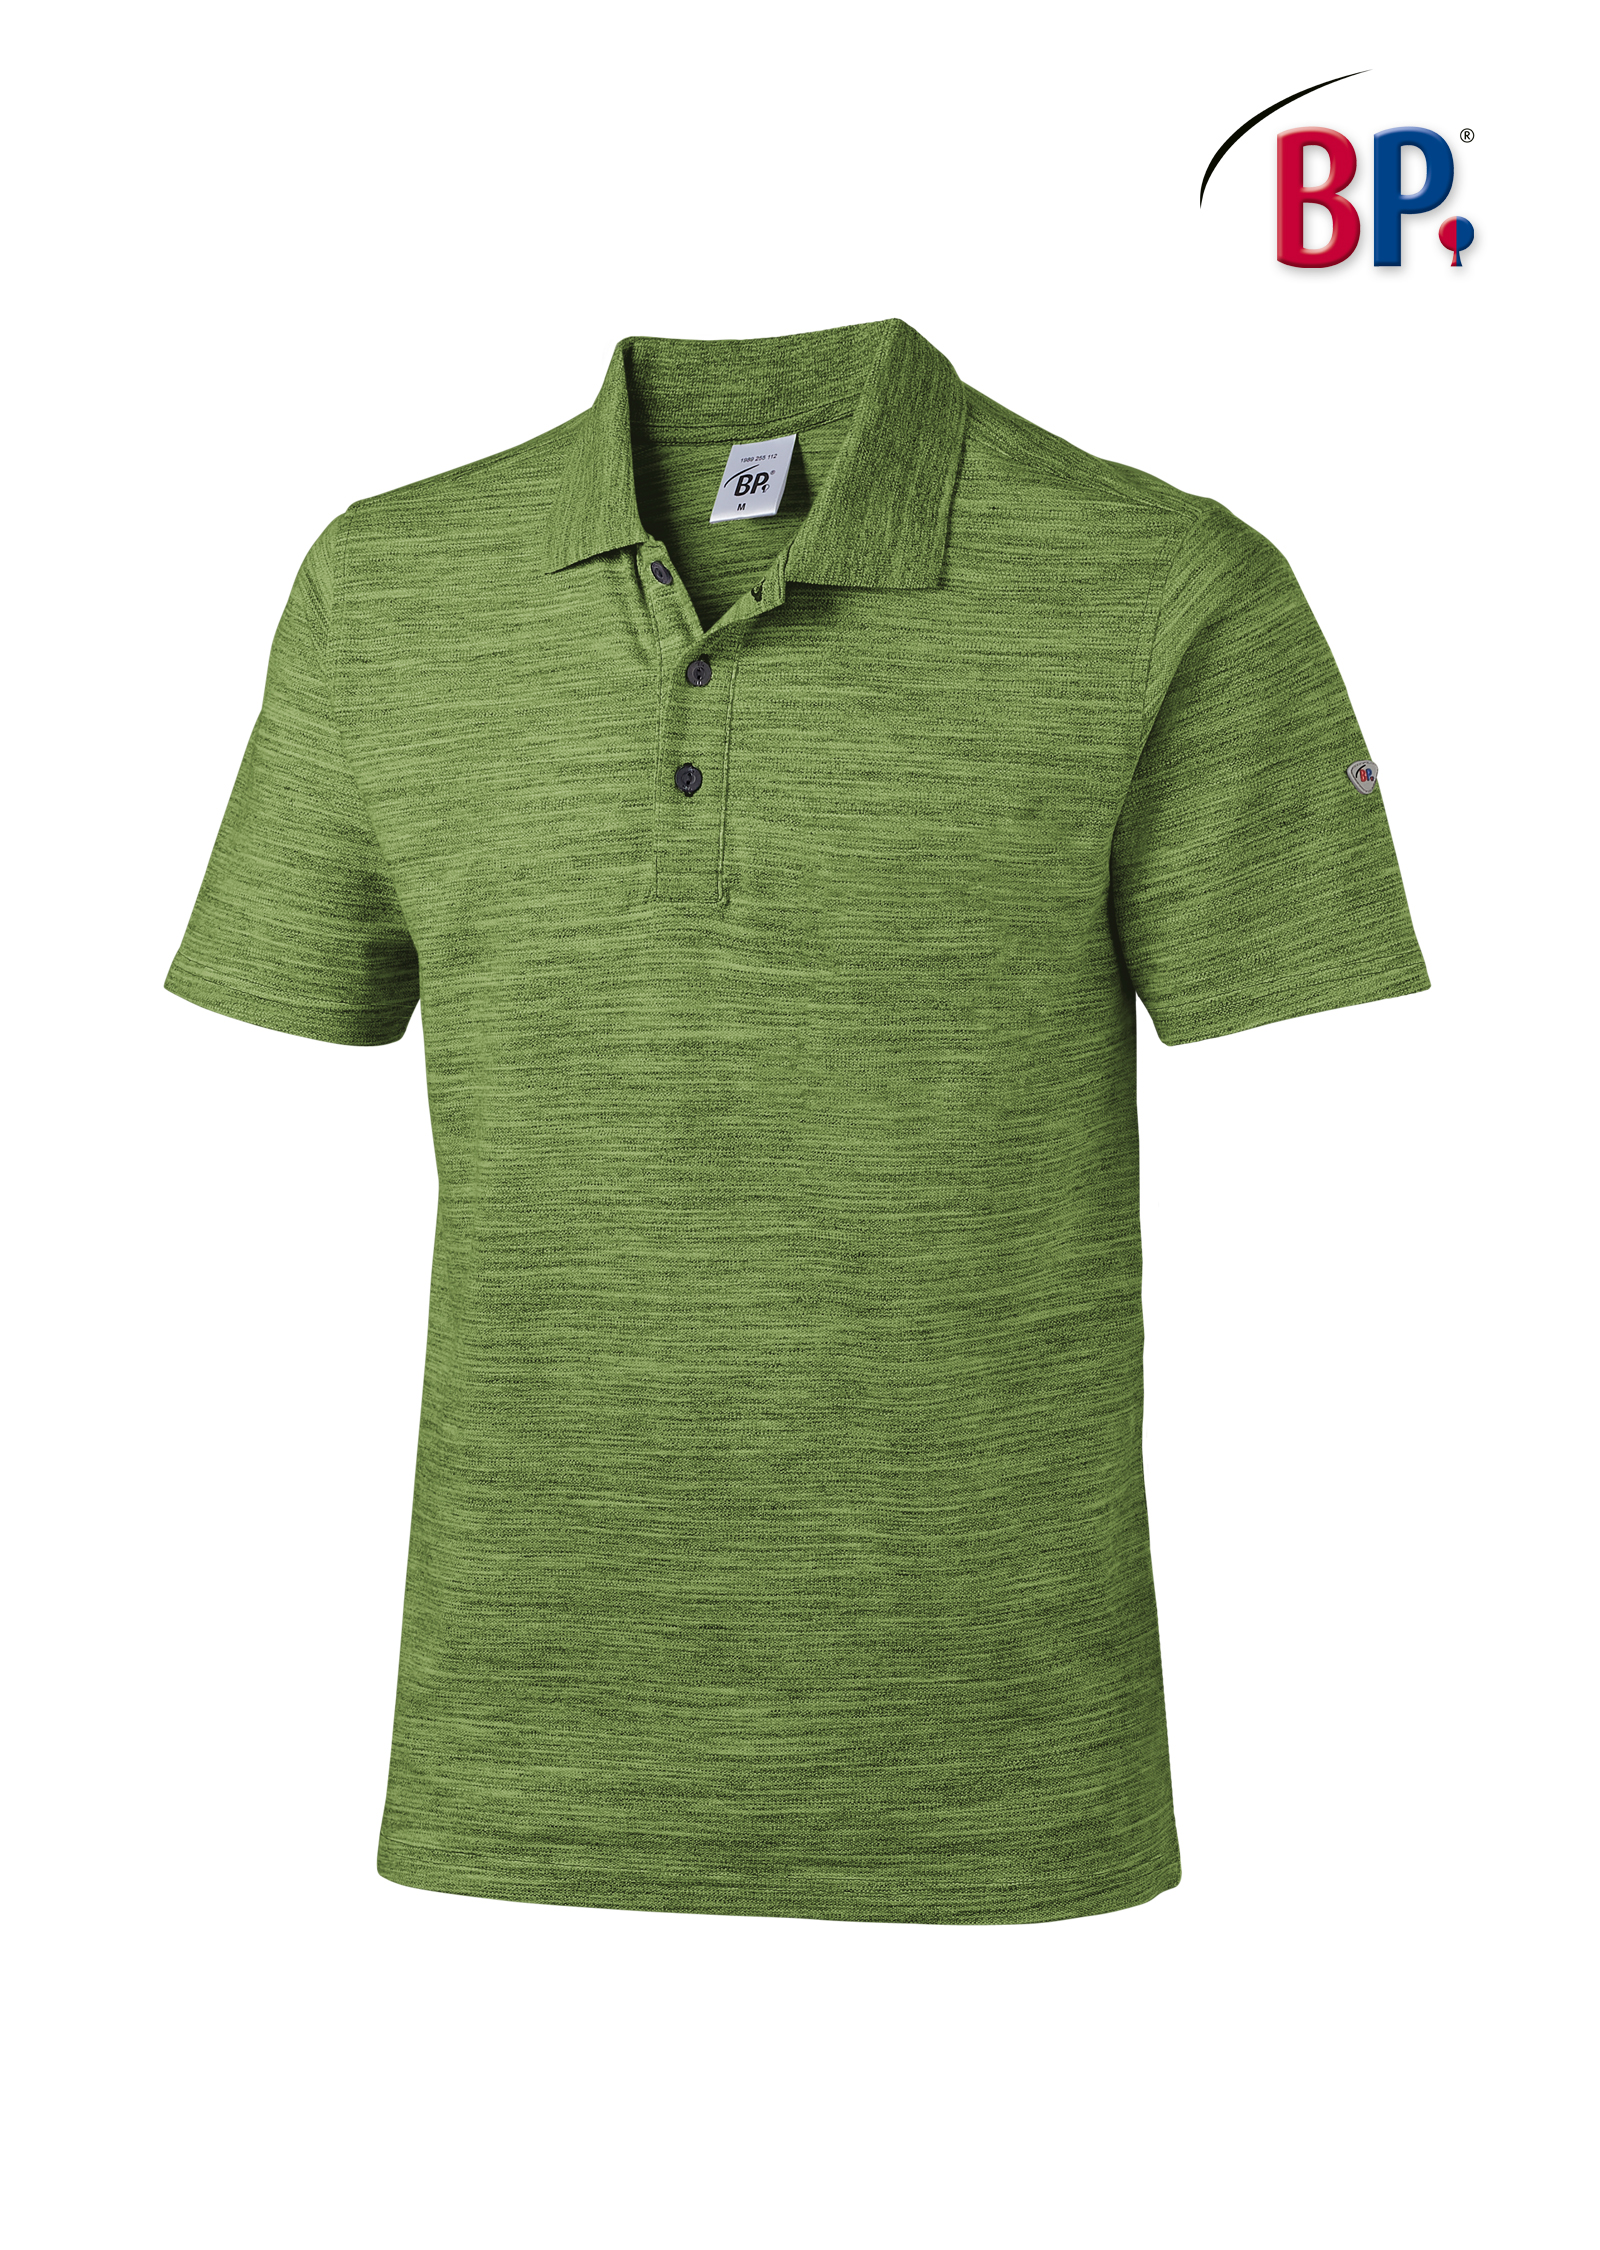 Welche Faktoren es vor dem Bestellen die Polo shirt grün zu beachten gilt